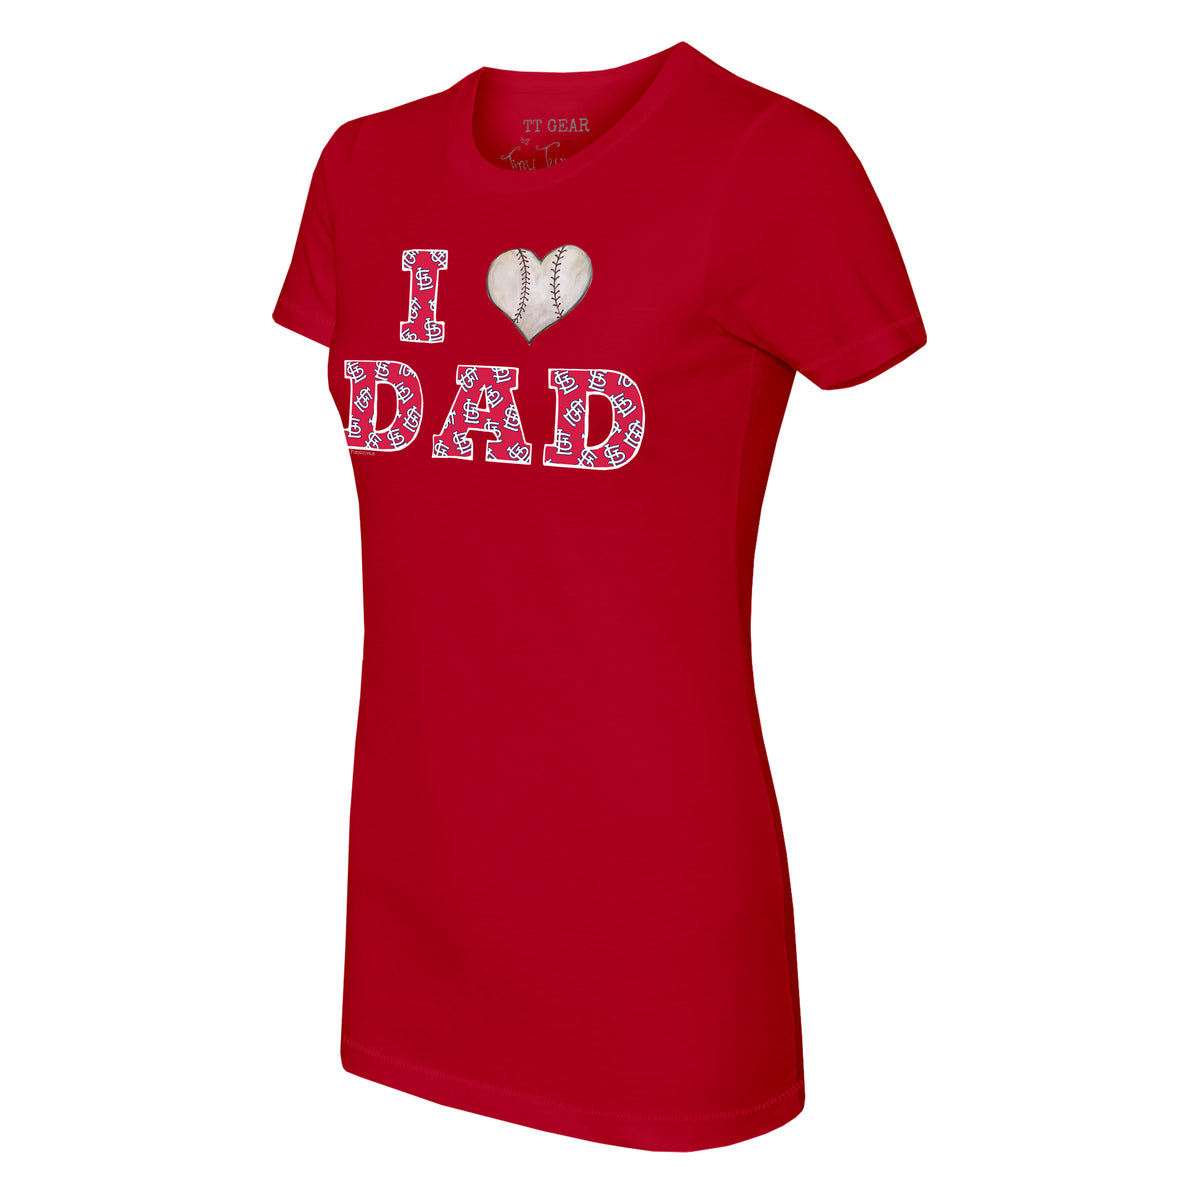 St Louis Cardinals Best Dad Ever Shirt